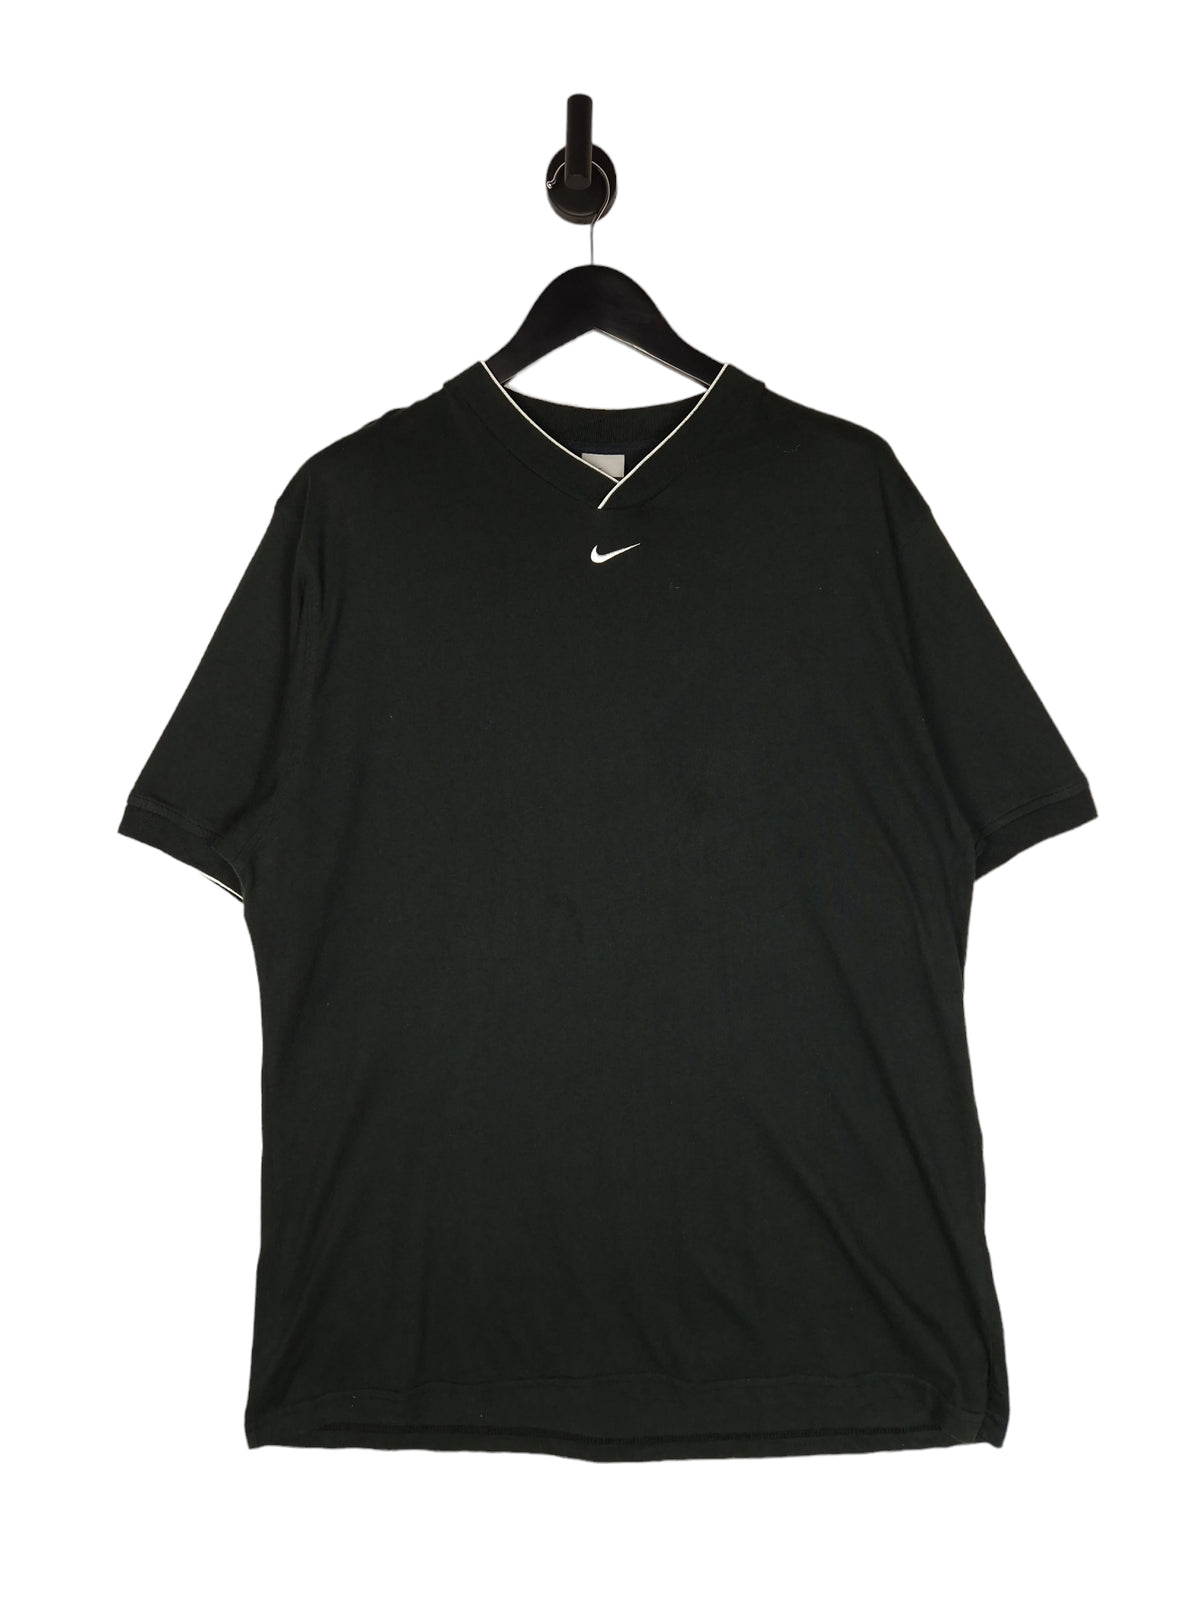 Y2K Nike Short Sleeve T-Shirt - Size XL